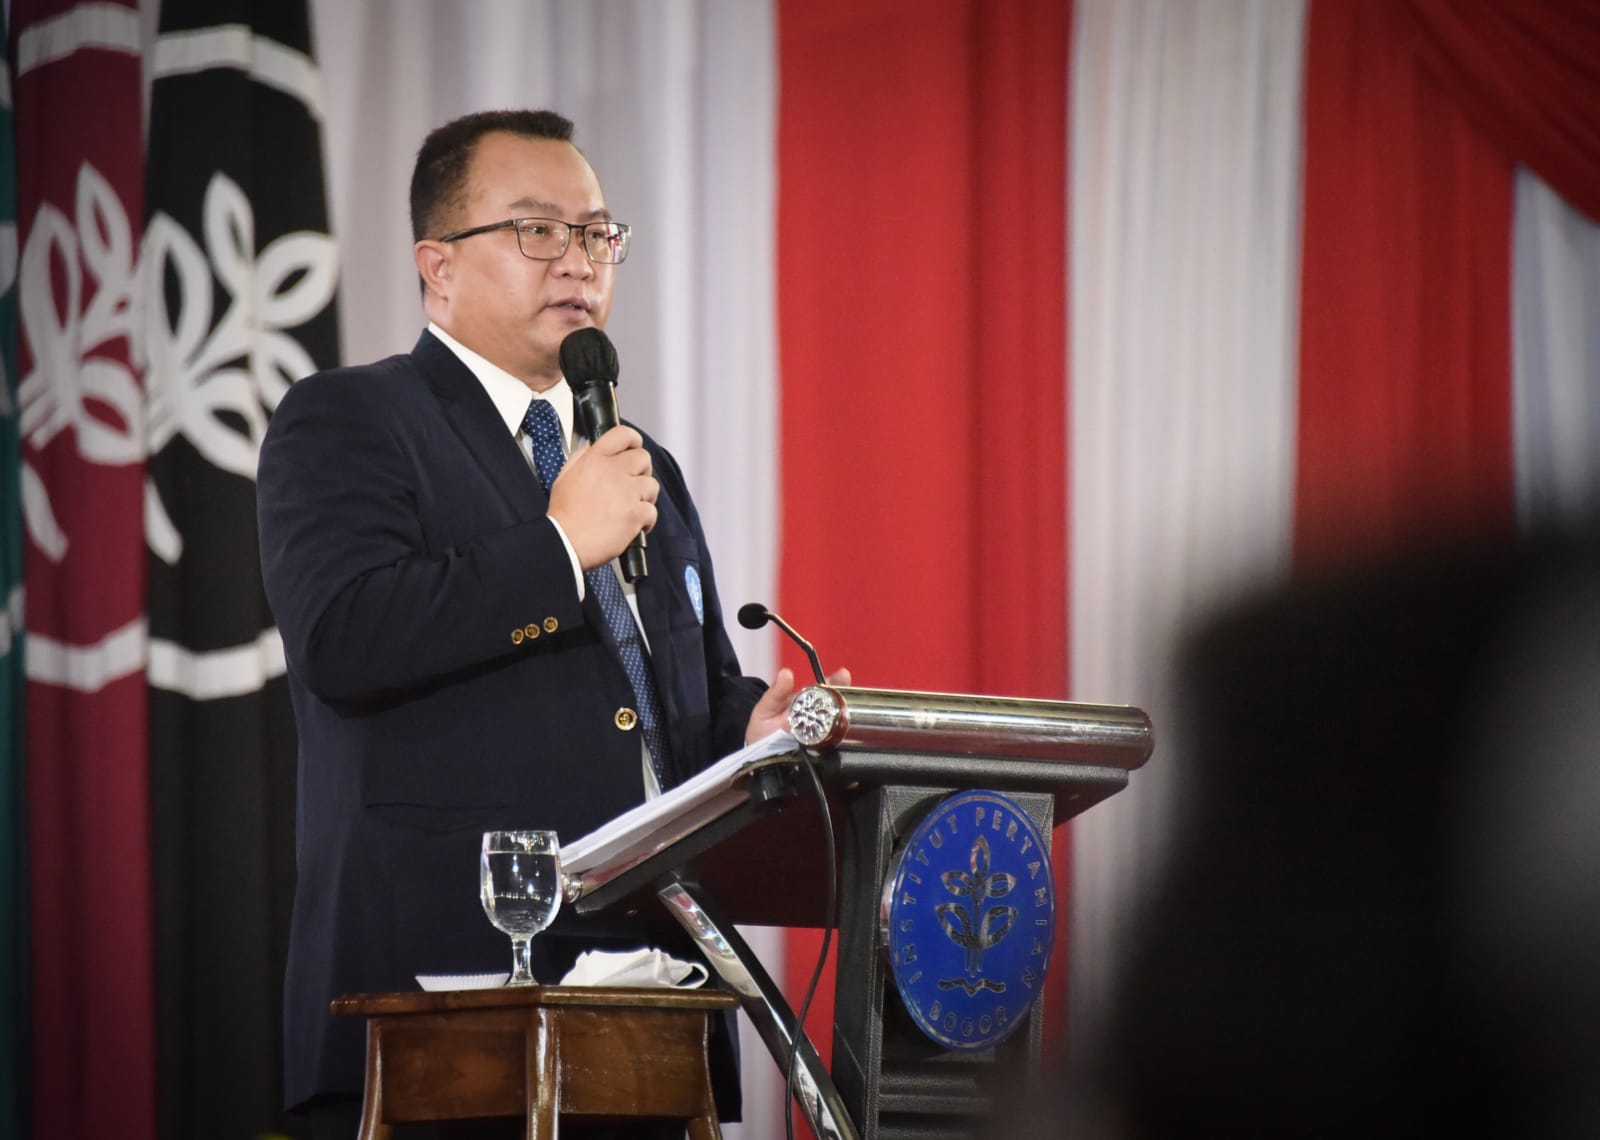 Dies Natalis ke-59 IPB University, Rektor Paparkan Resiliensi Pangan Indonesia Melalui Penguatan Inovasi dan Industri Pangan Nasional